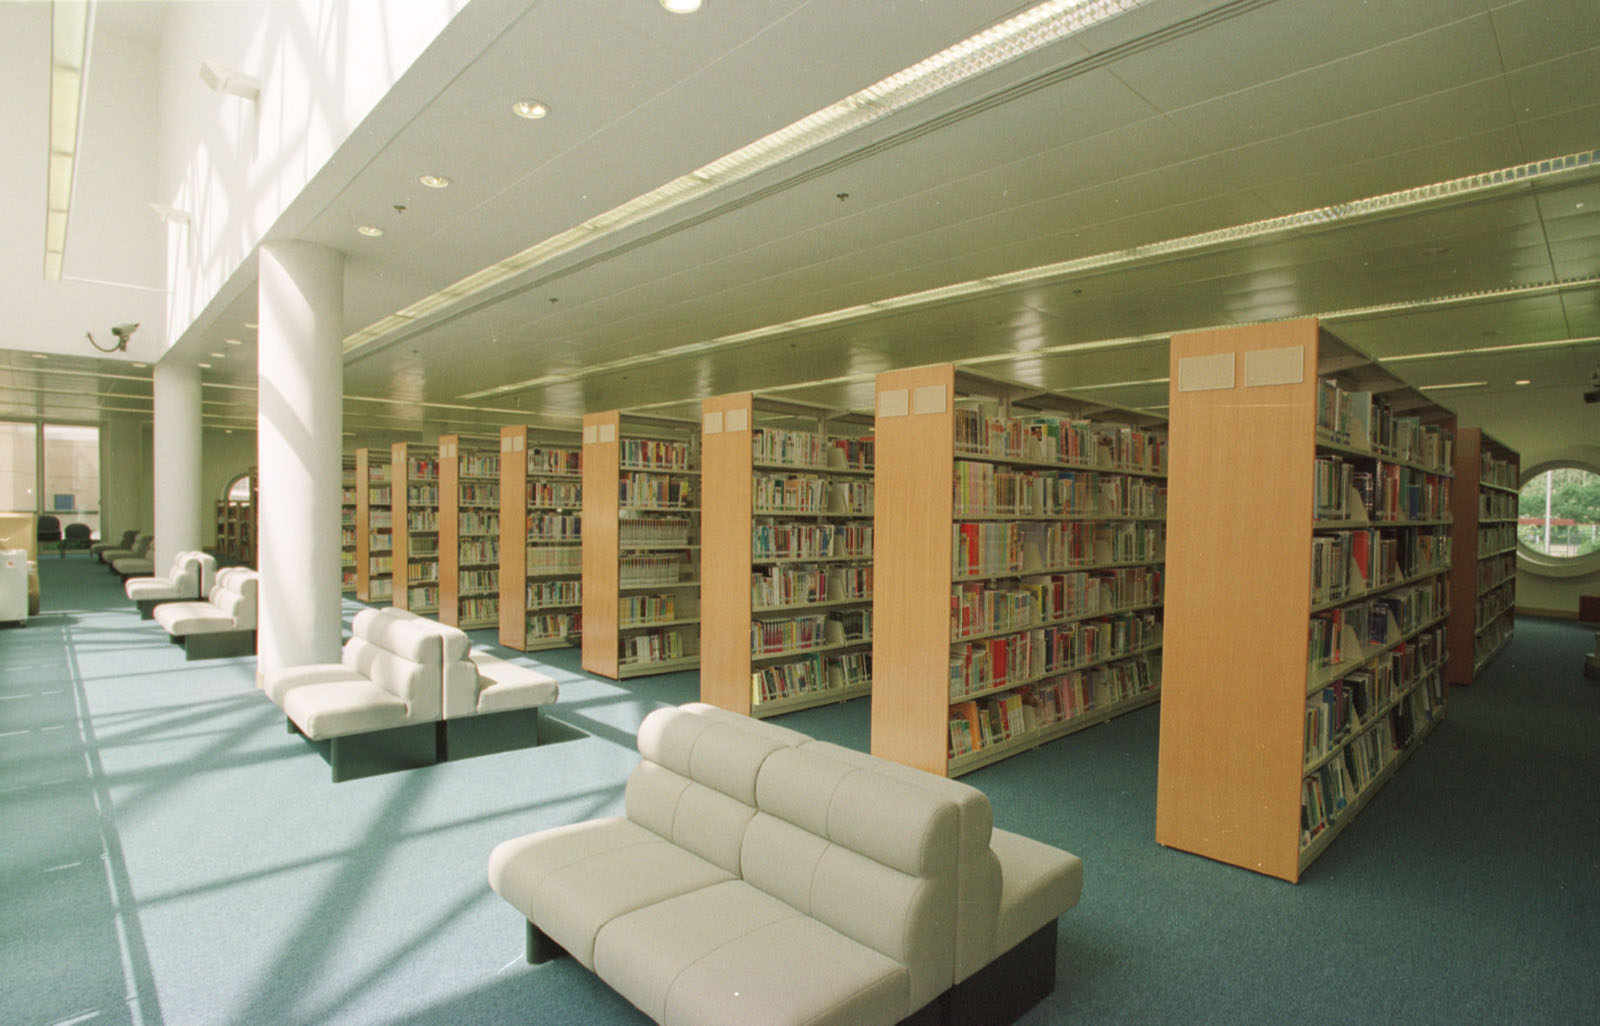 相片 9: 將軍澳公共圖書館